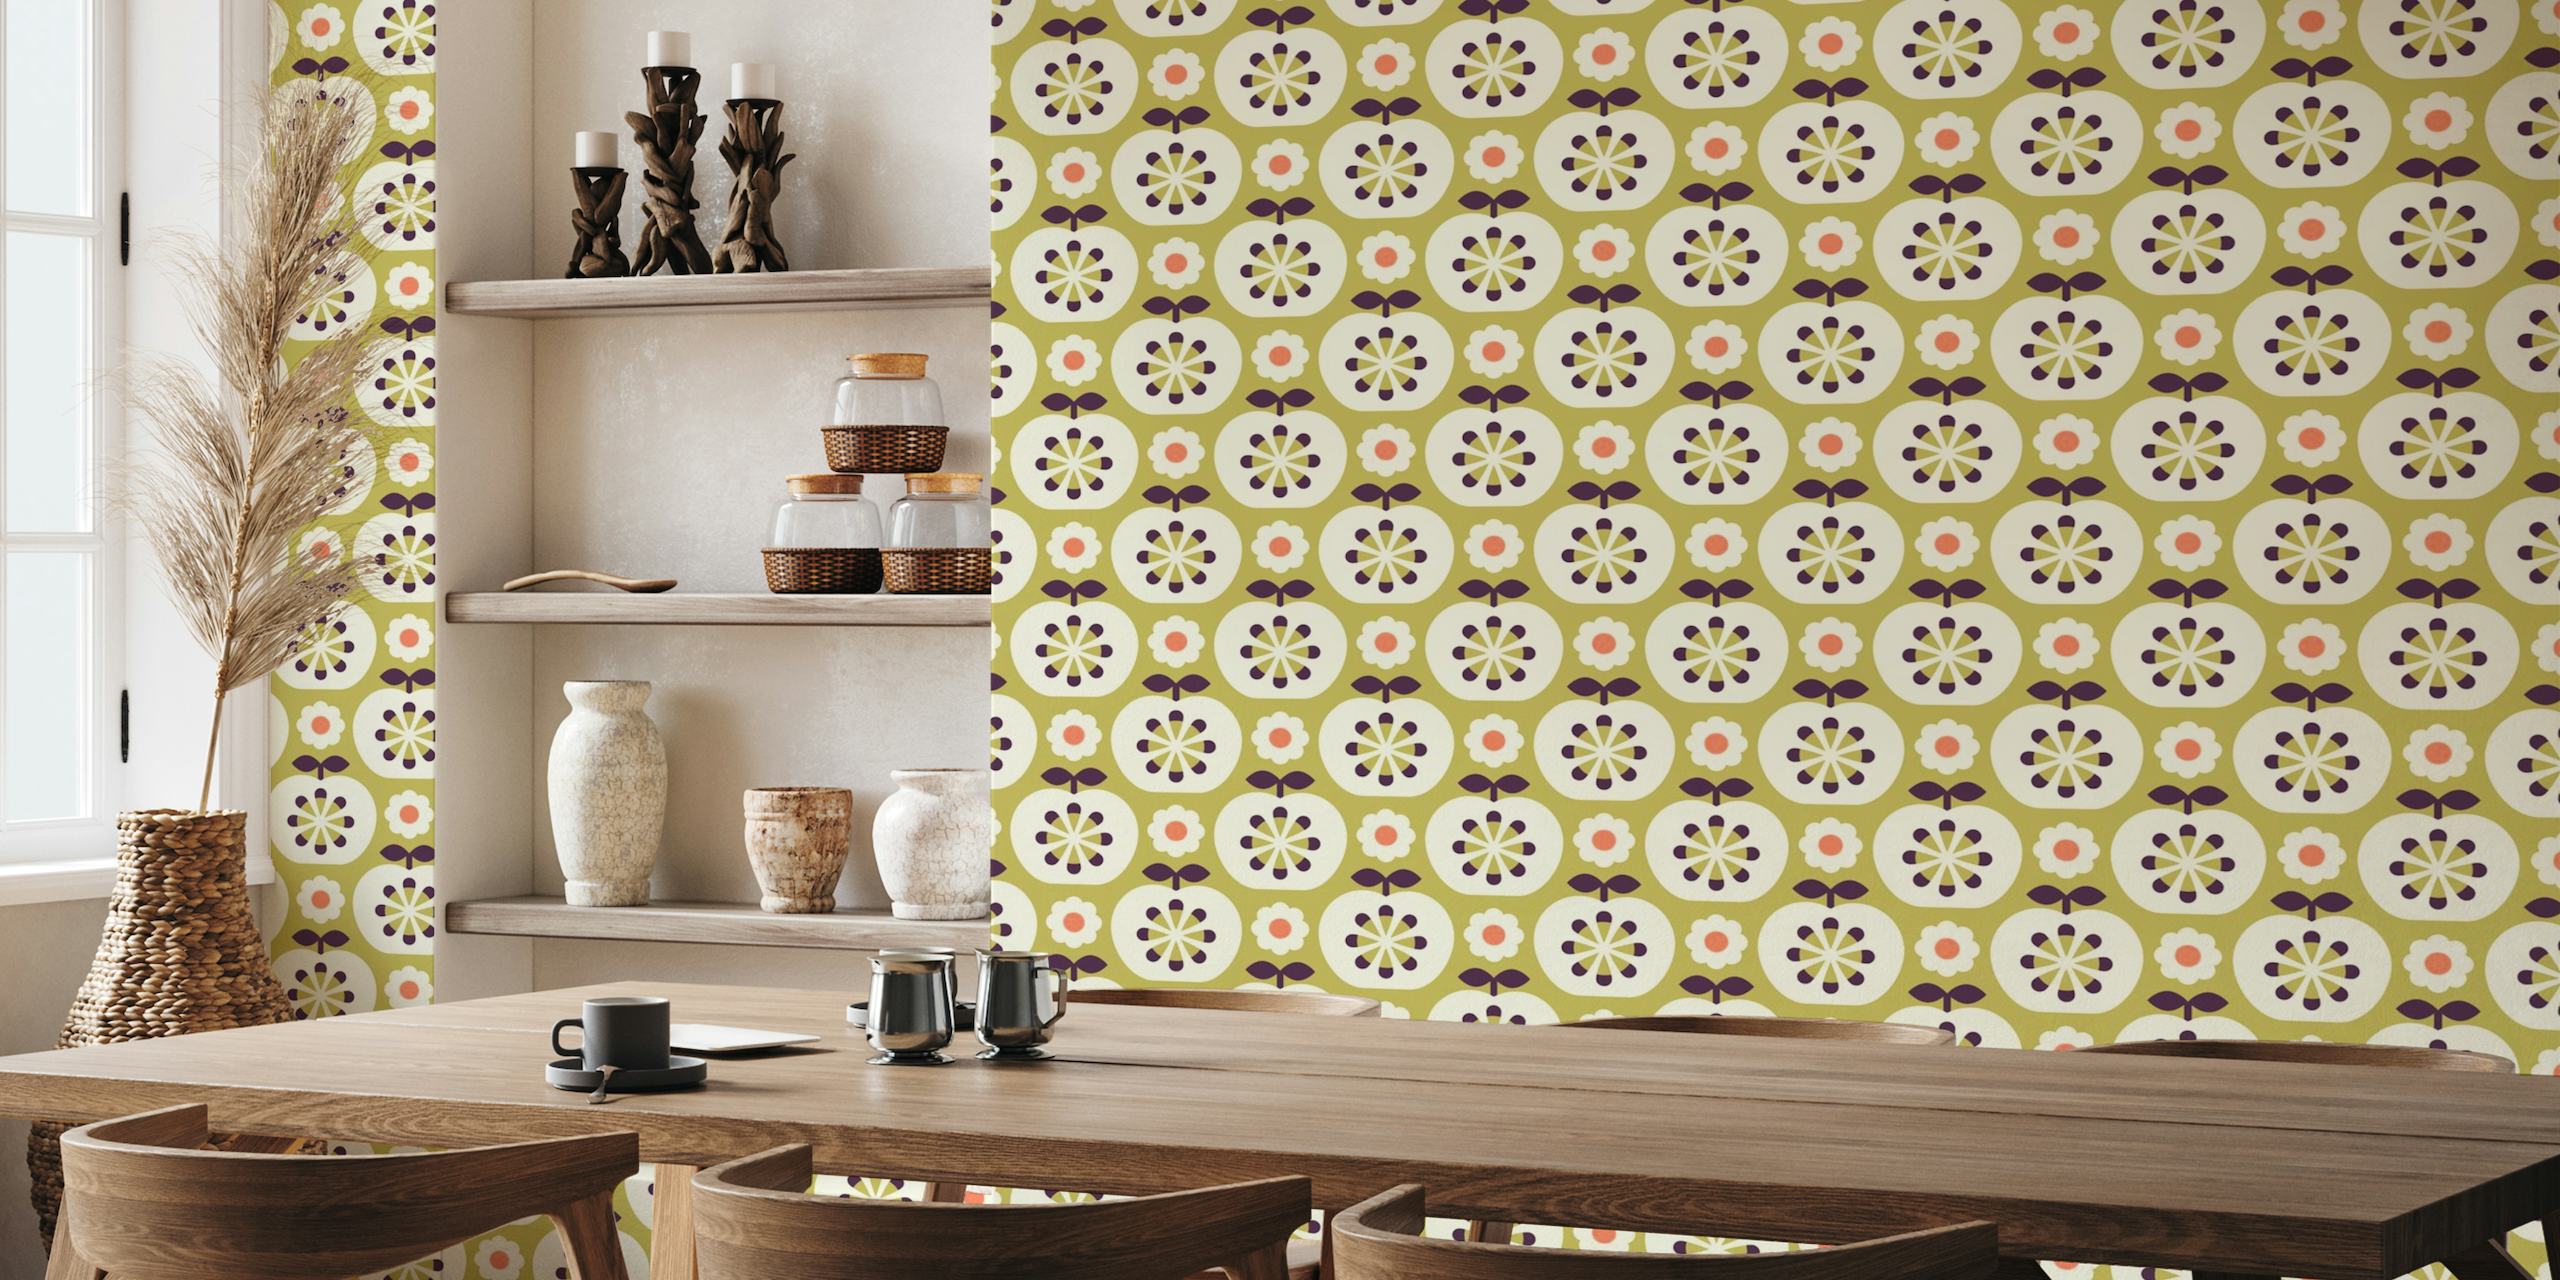 2800 D - retro apples, sage green wallpaper